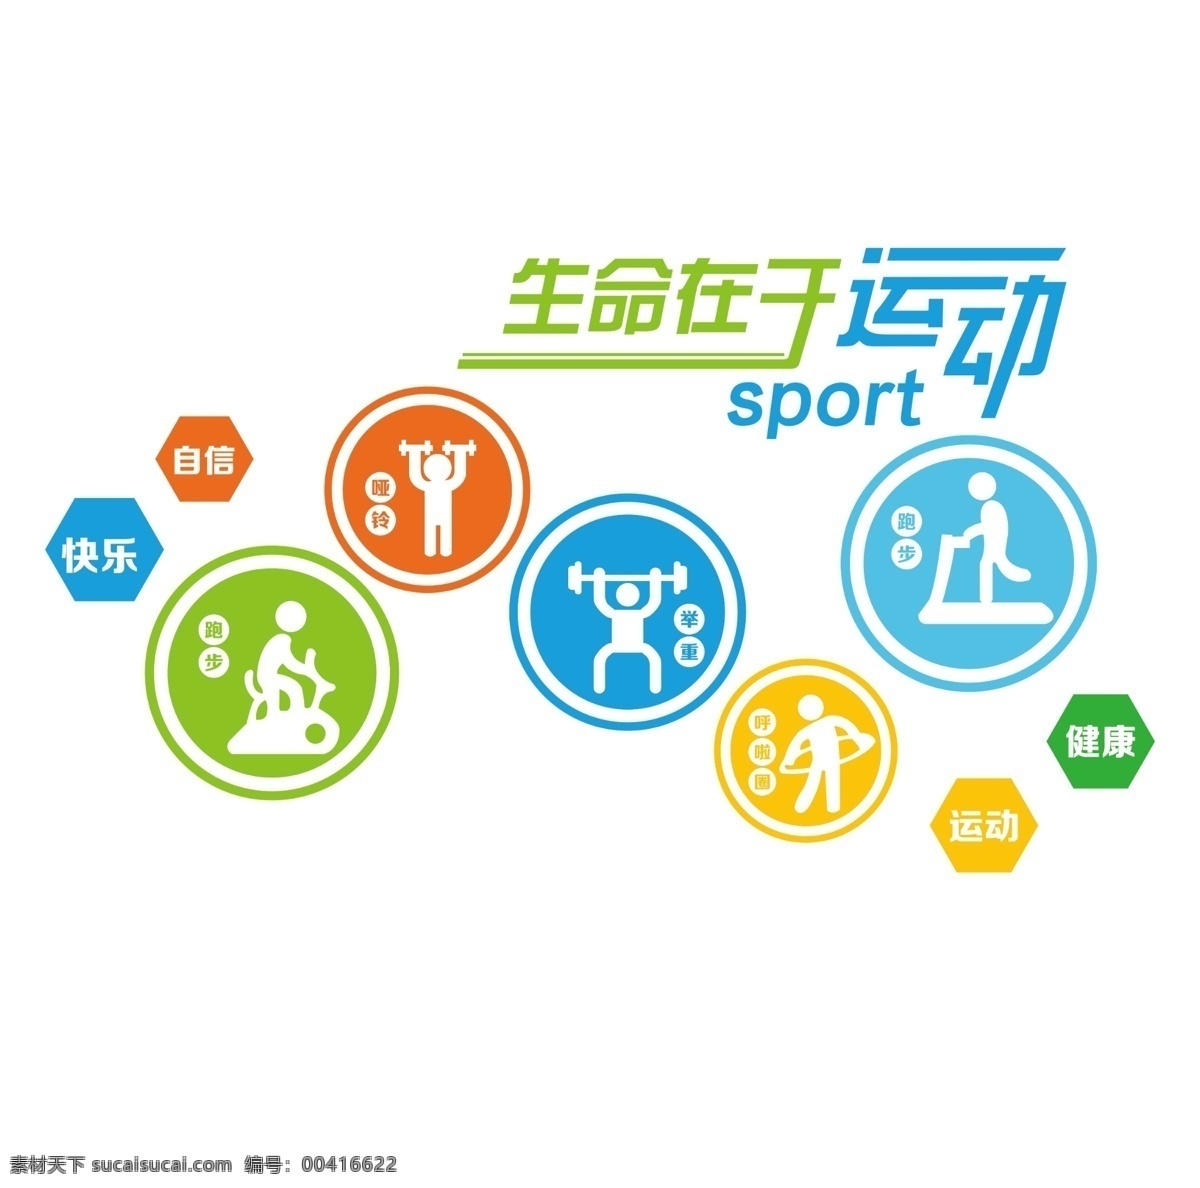 生命在于运动 健身 运动 体育 健康的体魄 我运动 我健康 我快乐 健身图版 运动图版 健身文化墙 运动文化墙